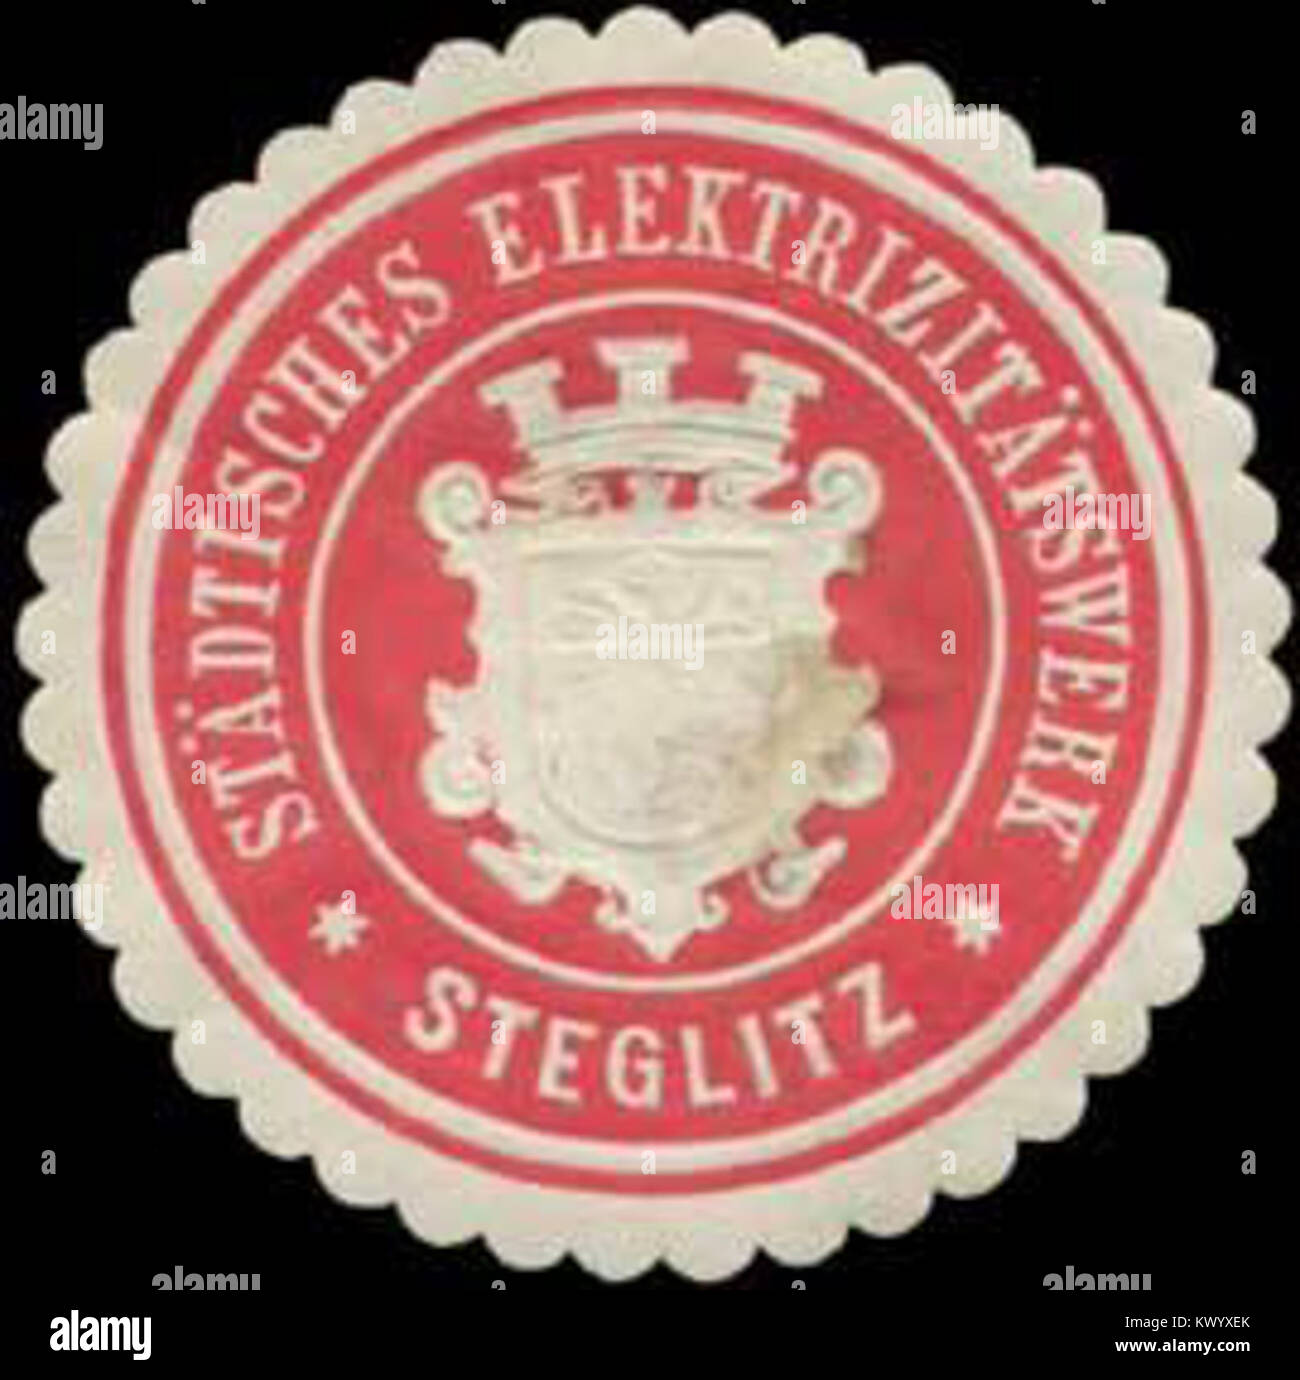 Siegelmarke Städtisches Elektrizitätswerk Steglitz W0386418 Stock Photo